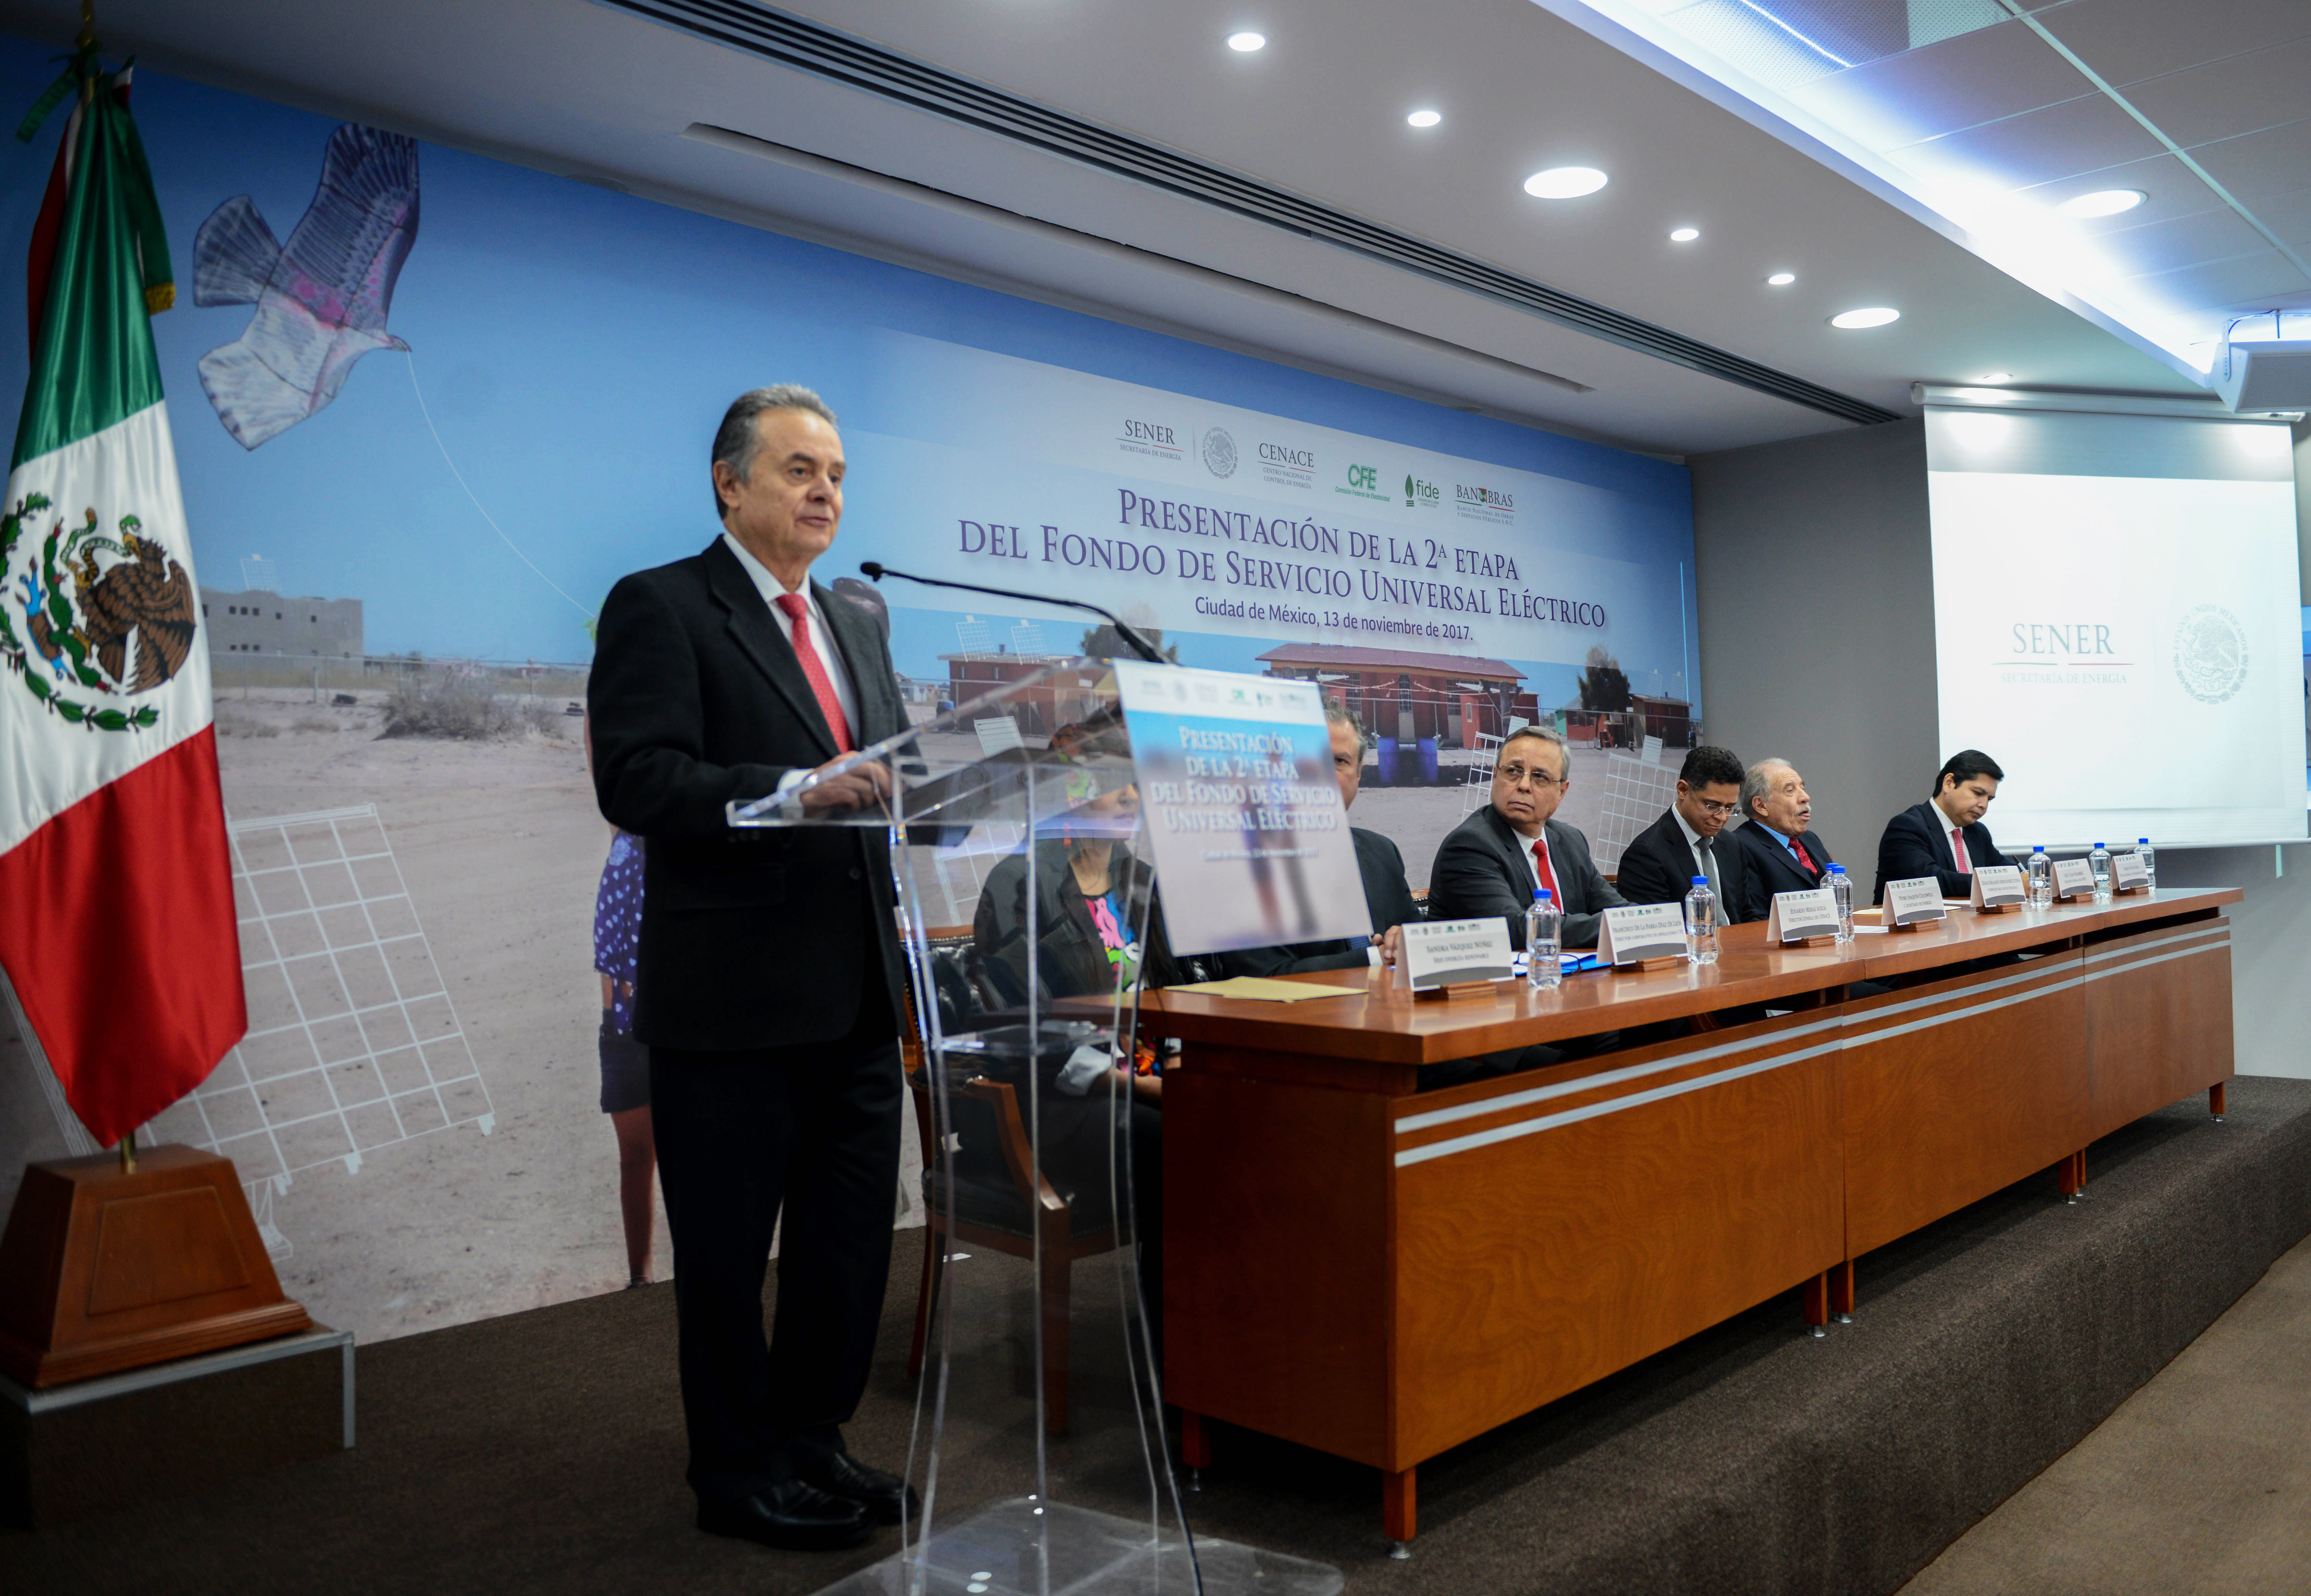 El Secretario de Energía, Pedro Joaquín Coldwell, de pie ante los asistentes de la presentación de la segunda etapa del Fondo de Servicio Universal Eléctrico, emite su discurso.